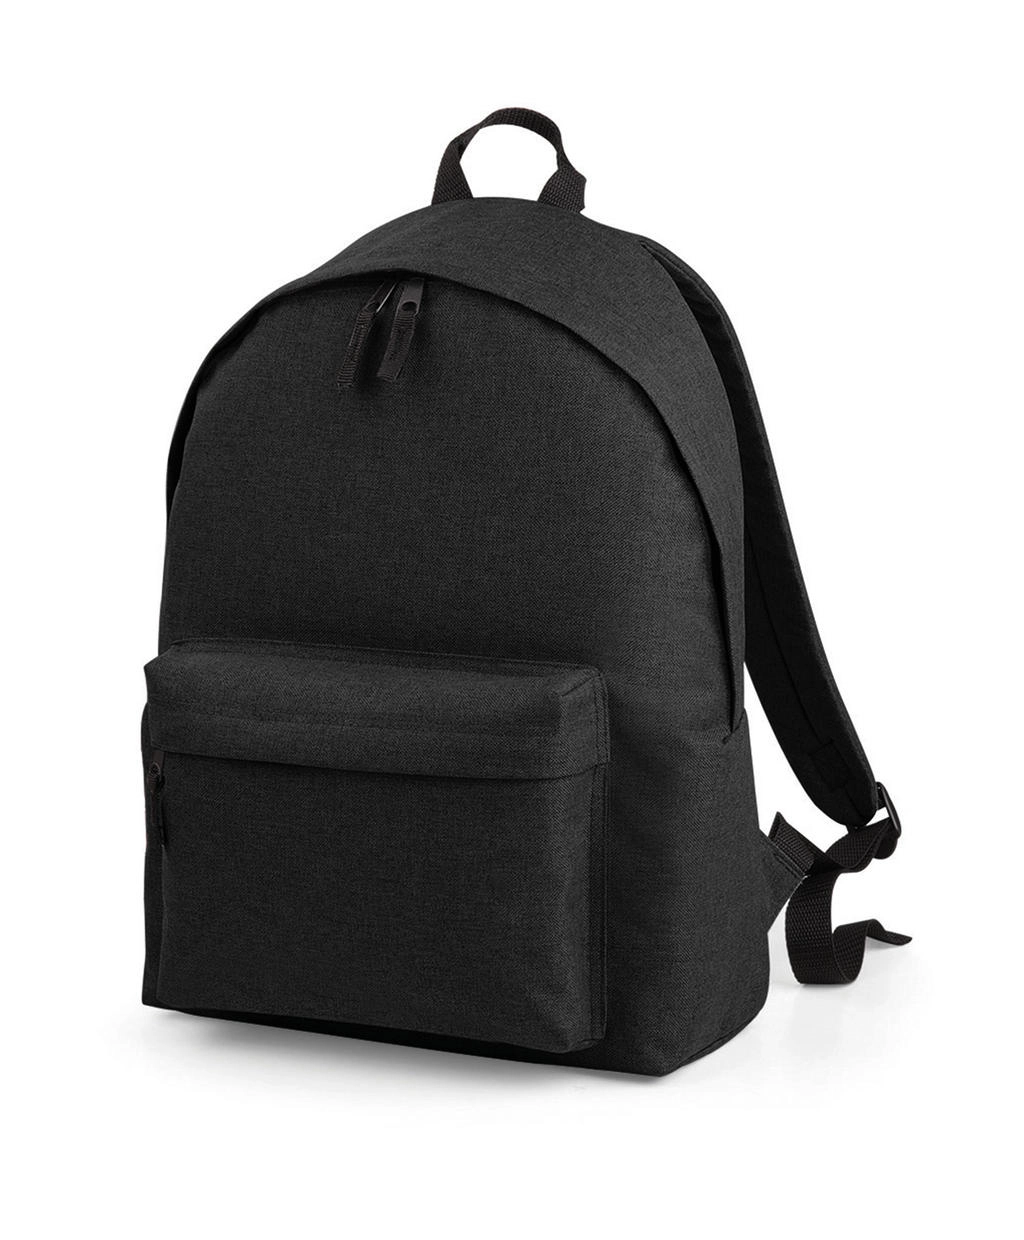 Two-Tone Fashion Backpack zum Besticken und Bedrucken in der Farbe Anthracite mit Ihren Logo, Schriftzug oder Motiv.